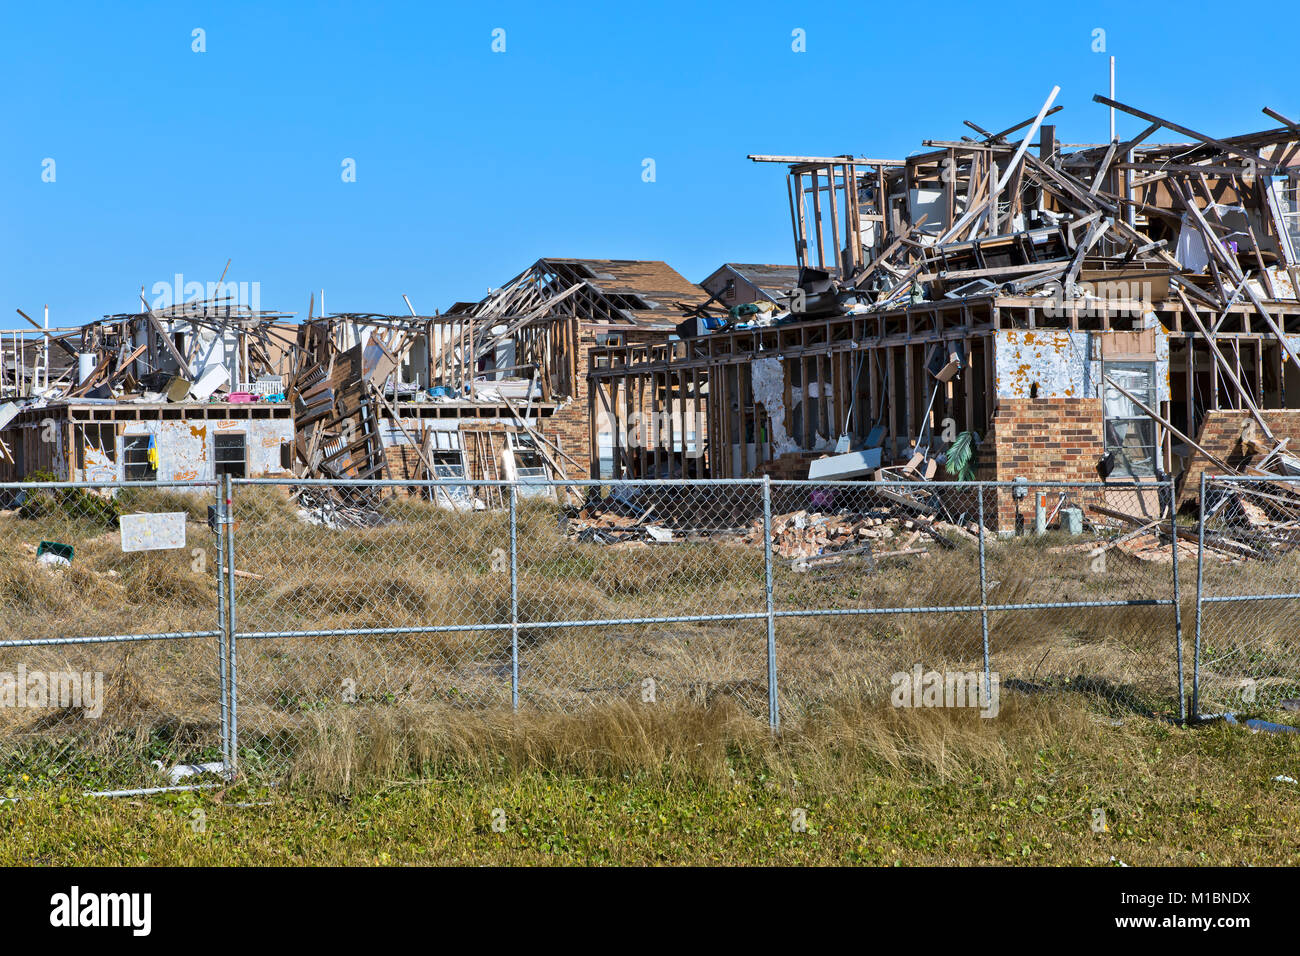 Salt Grass Landing appartamenti totalmente distrutti dall'uragano Harvey, agosto 2017. Foto Stock